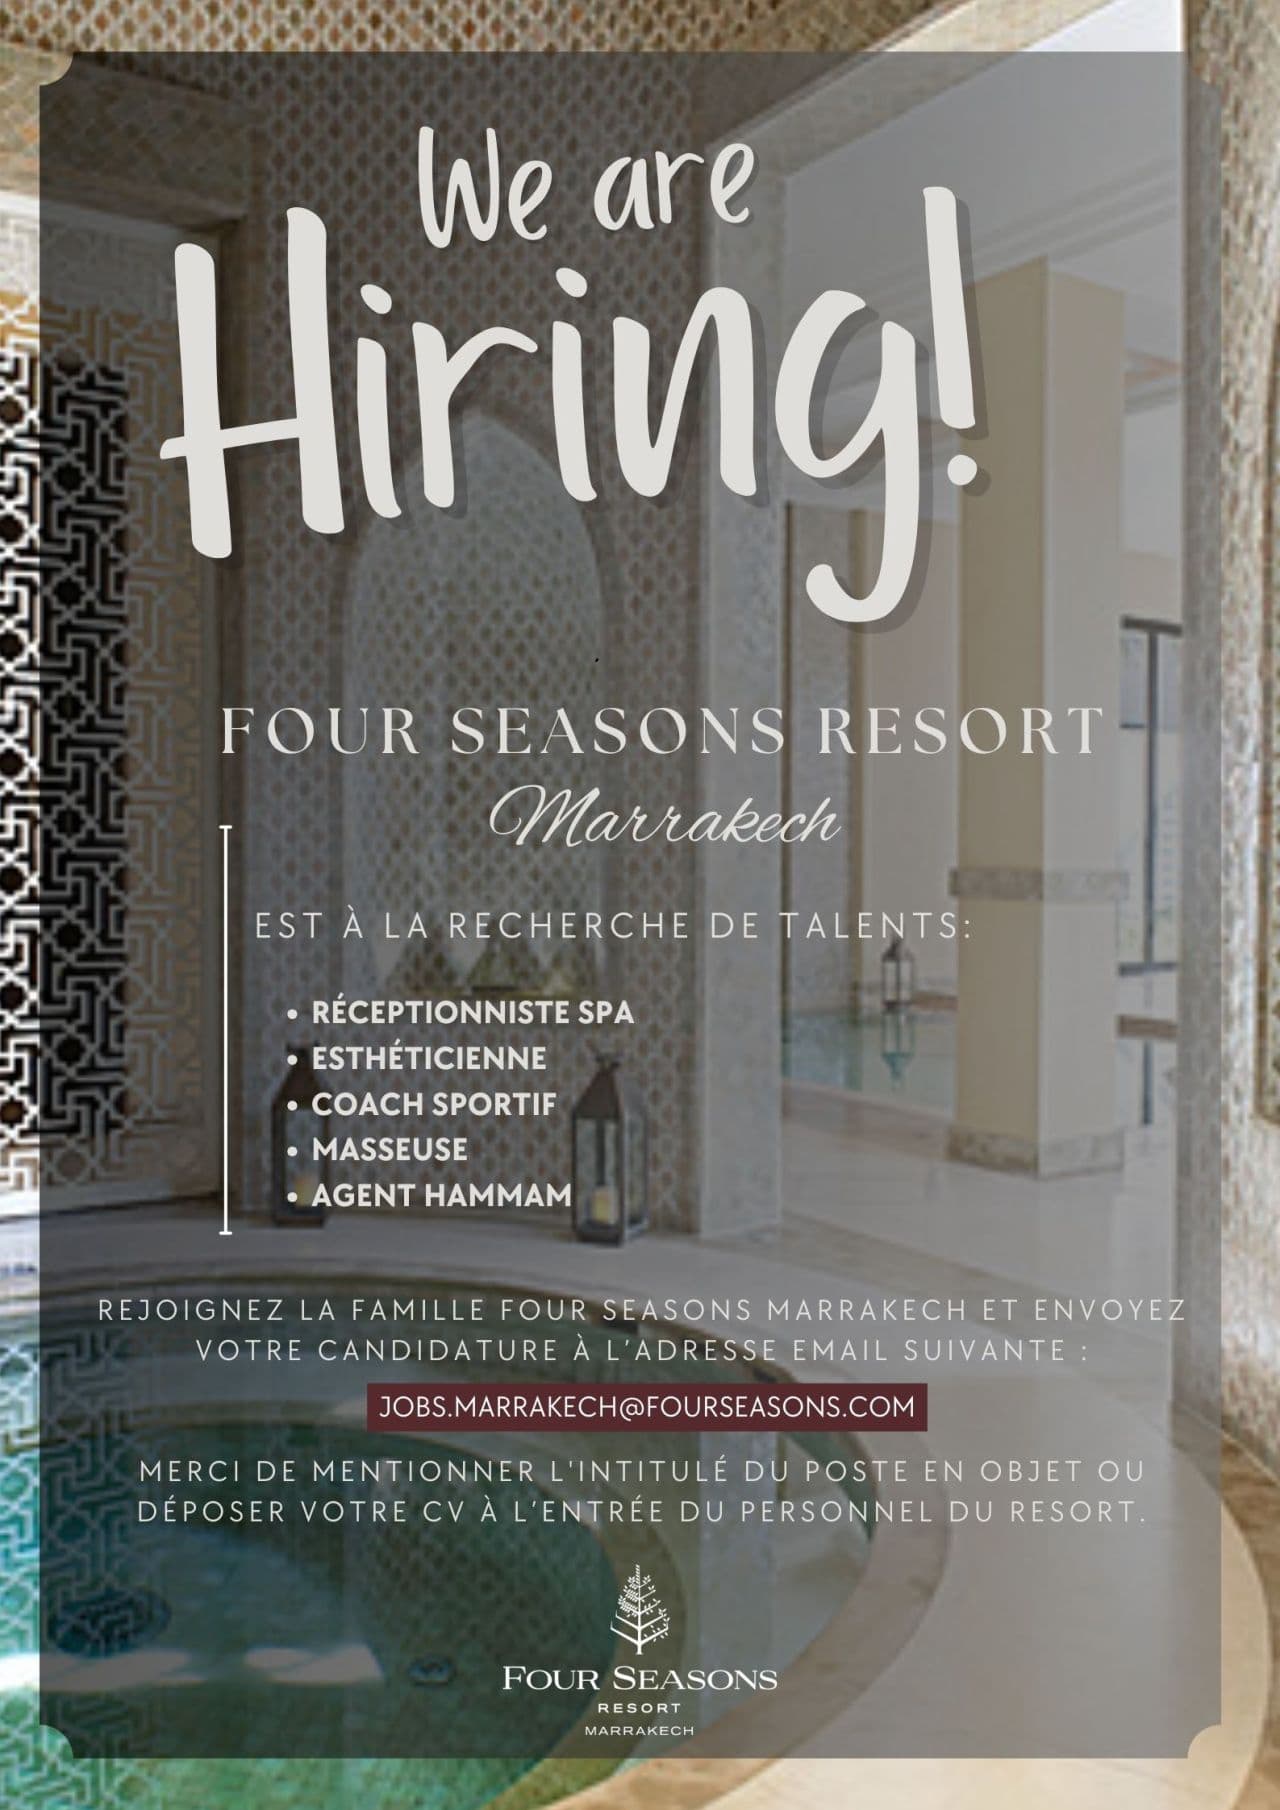 Le Four Seasons Resort Marrakech propose Plusieurs Offres d'Emploi